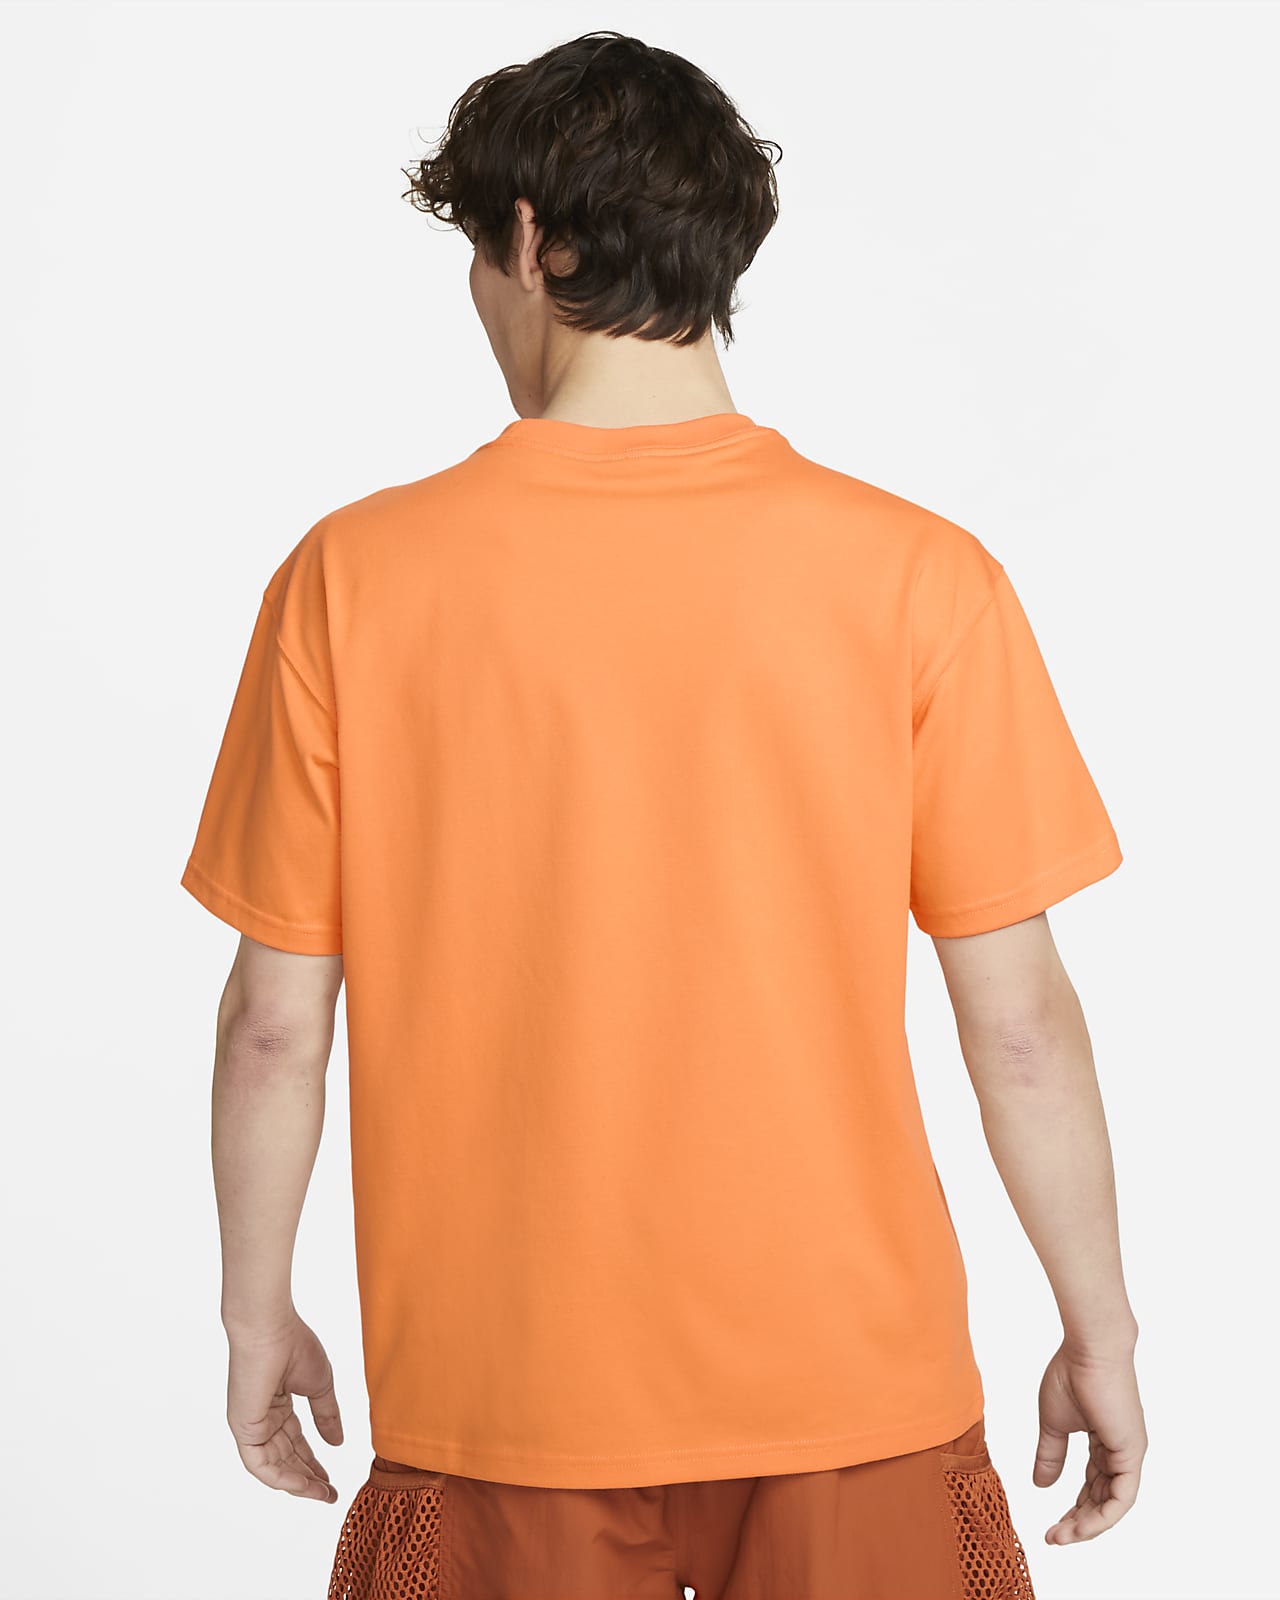 Nike Acg Men'S Short-Sleeve T-Shirt. Nike Vn